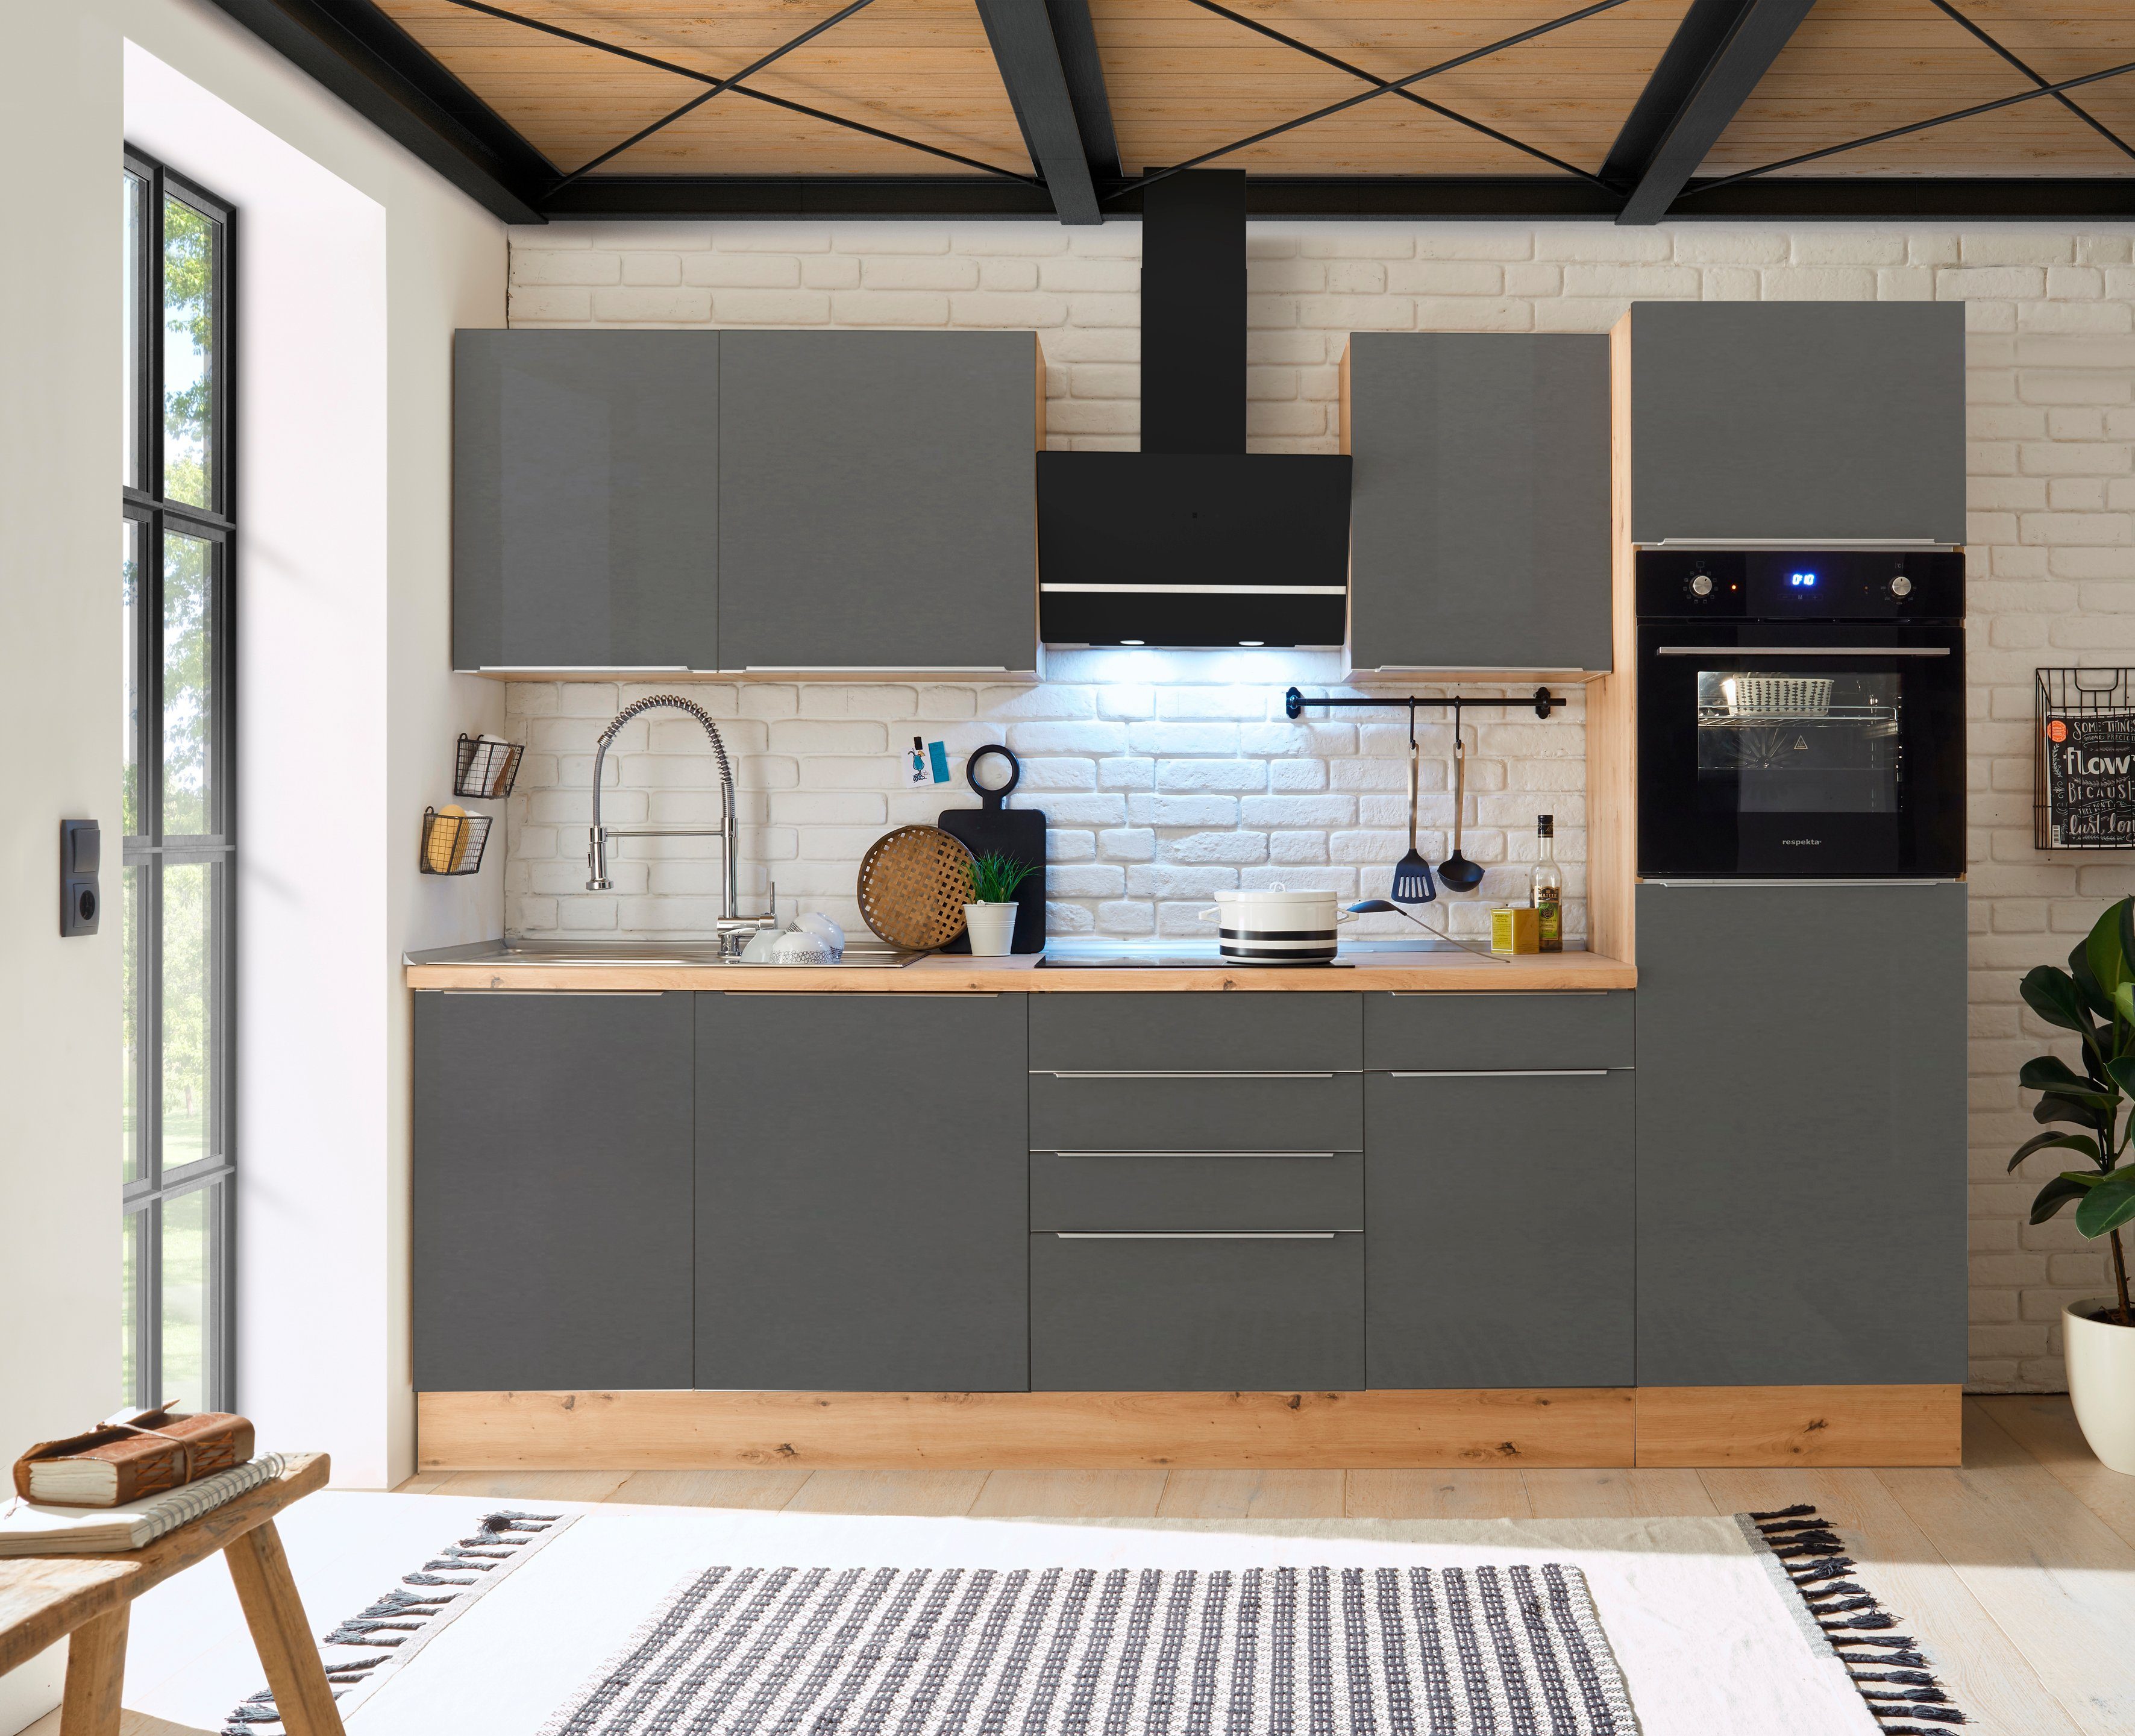 RESPEKTA Küchenzeile Safado aus der Serie Marleen, hochwertige Ausstattung wie Soft Close Funktion, Breite 280 cm grau/artisaneiche | artisaneiche